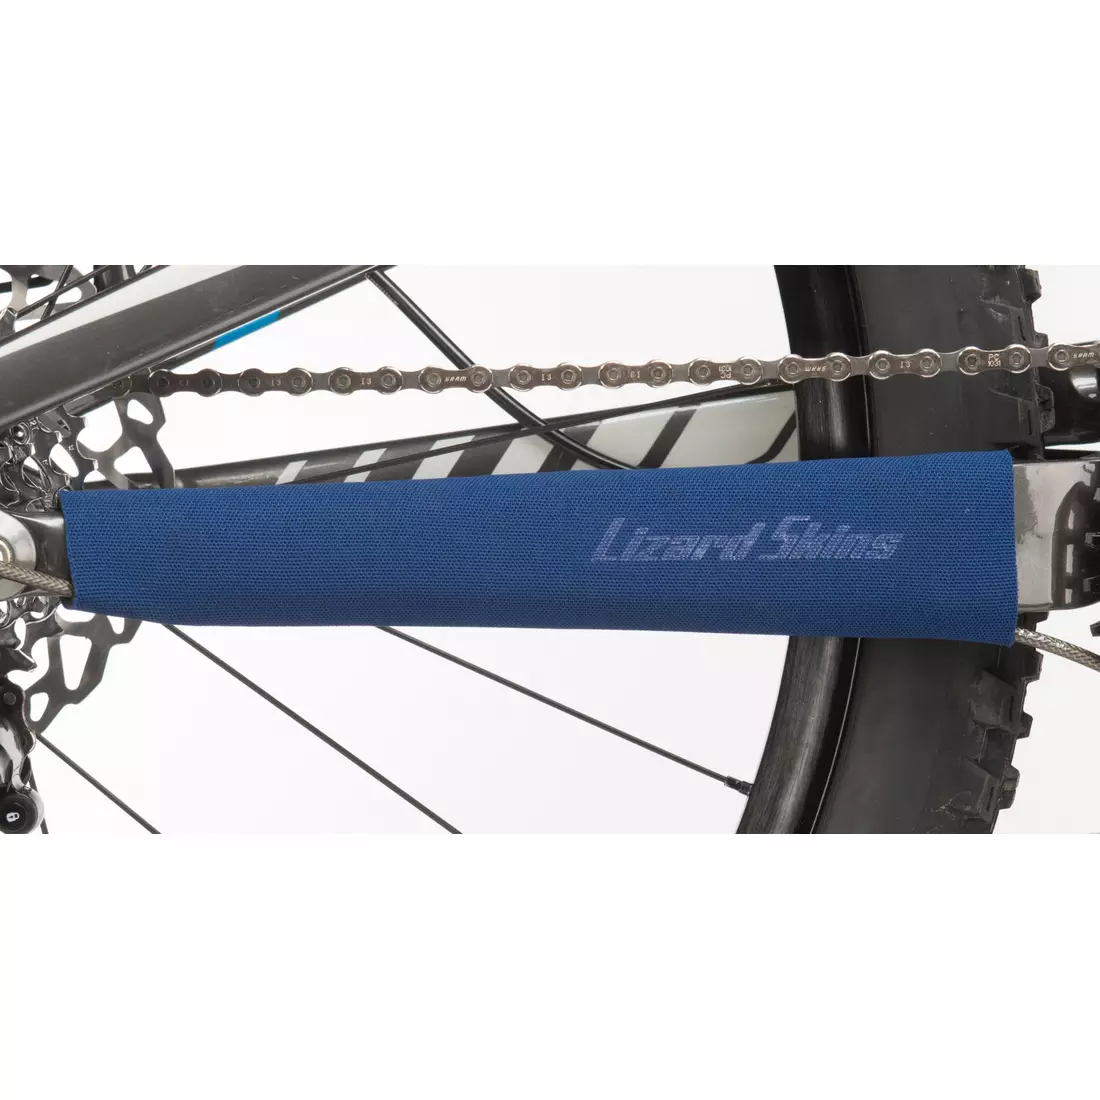 LIZARDSKINS osłona na ramę roweru large neoprene chainstay protector niebieski 